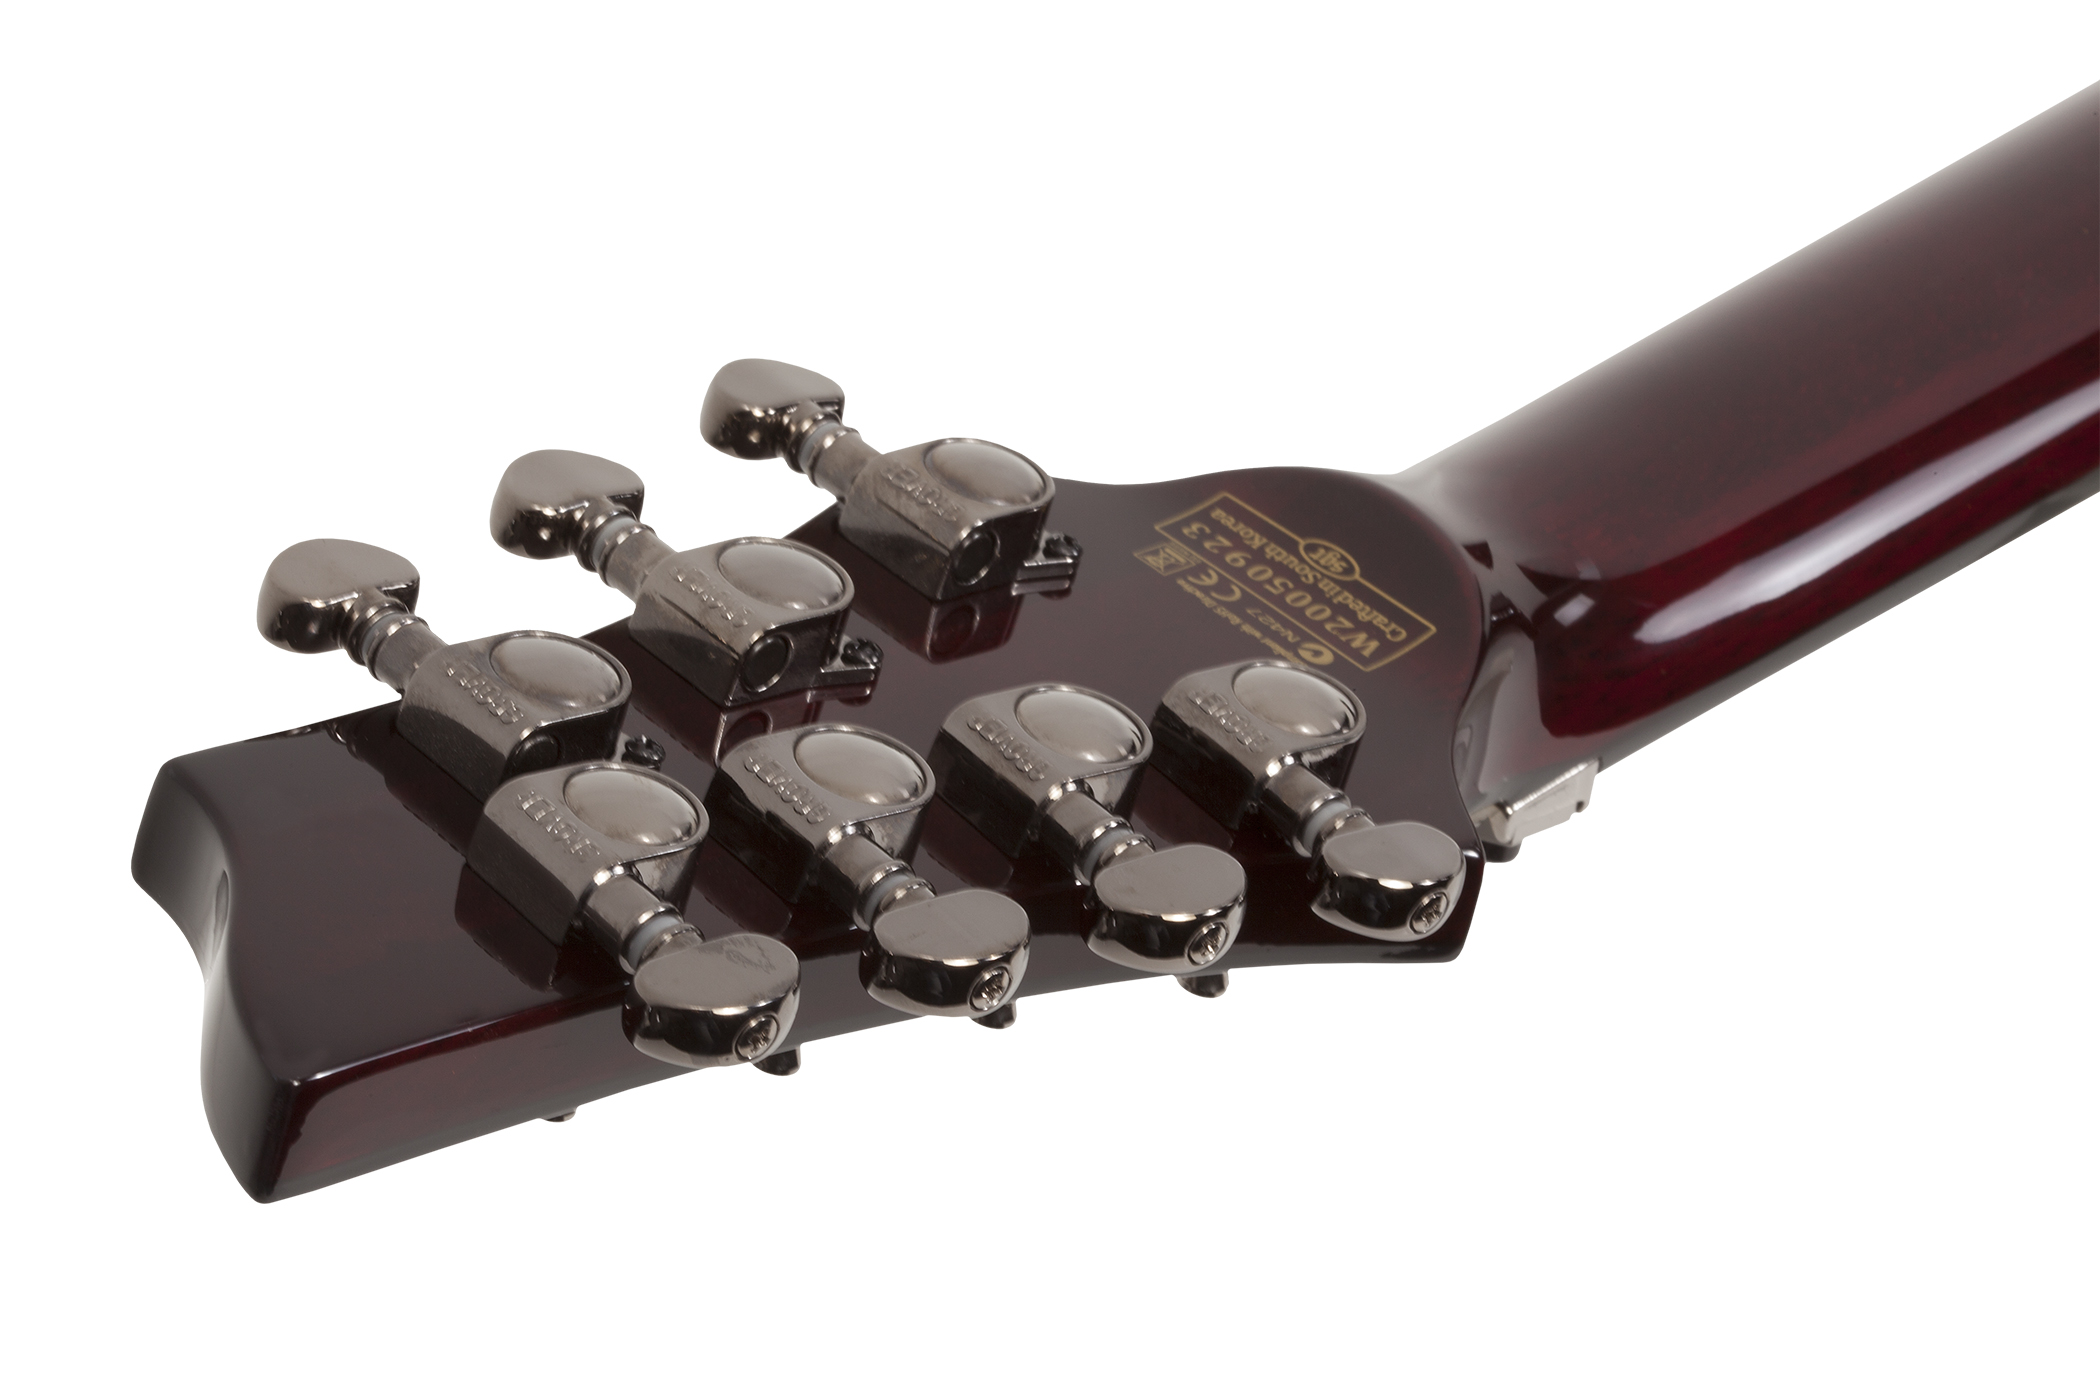 Schecter C-7 Fr S Hellraiser 7c 2h Emg Sustainiac Rw - Black Cherry - 7 string electric guitar - Variation 4